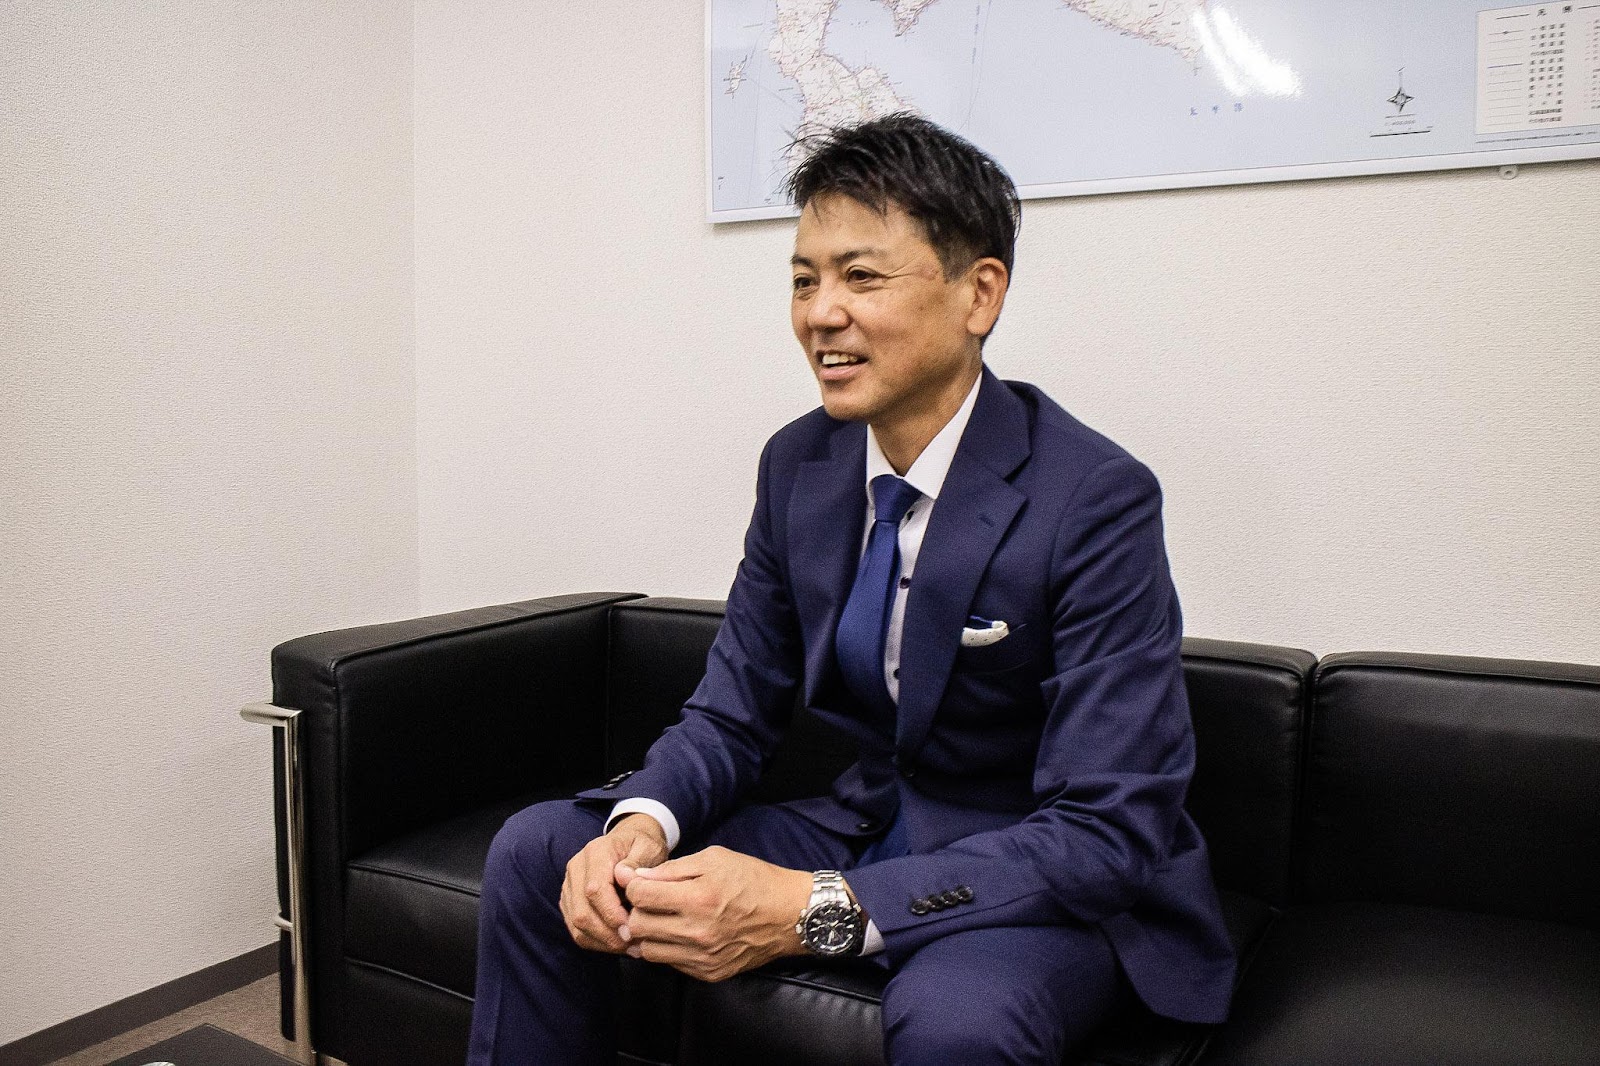 ースパーク株式会社 代表取締役・前川琢也さん